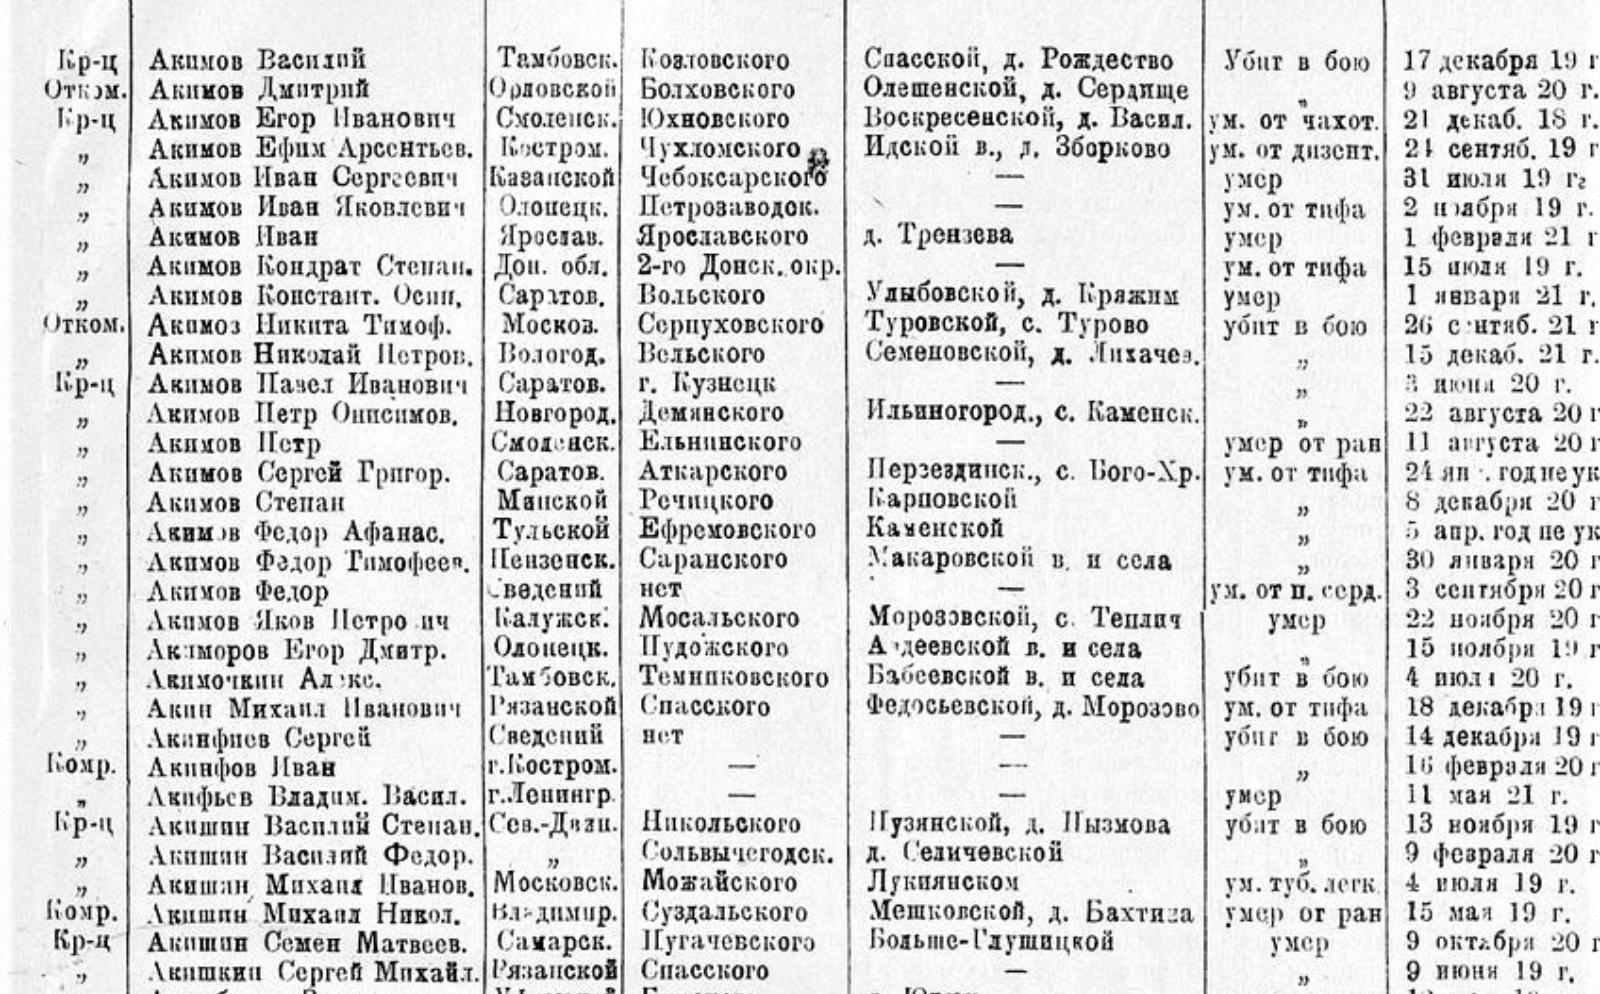 Из списка потерь РККА на 51 тыс. погибших (изд. 1926 г.)